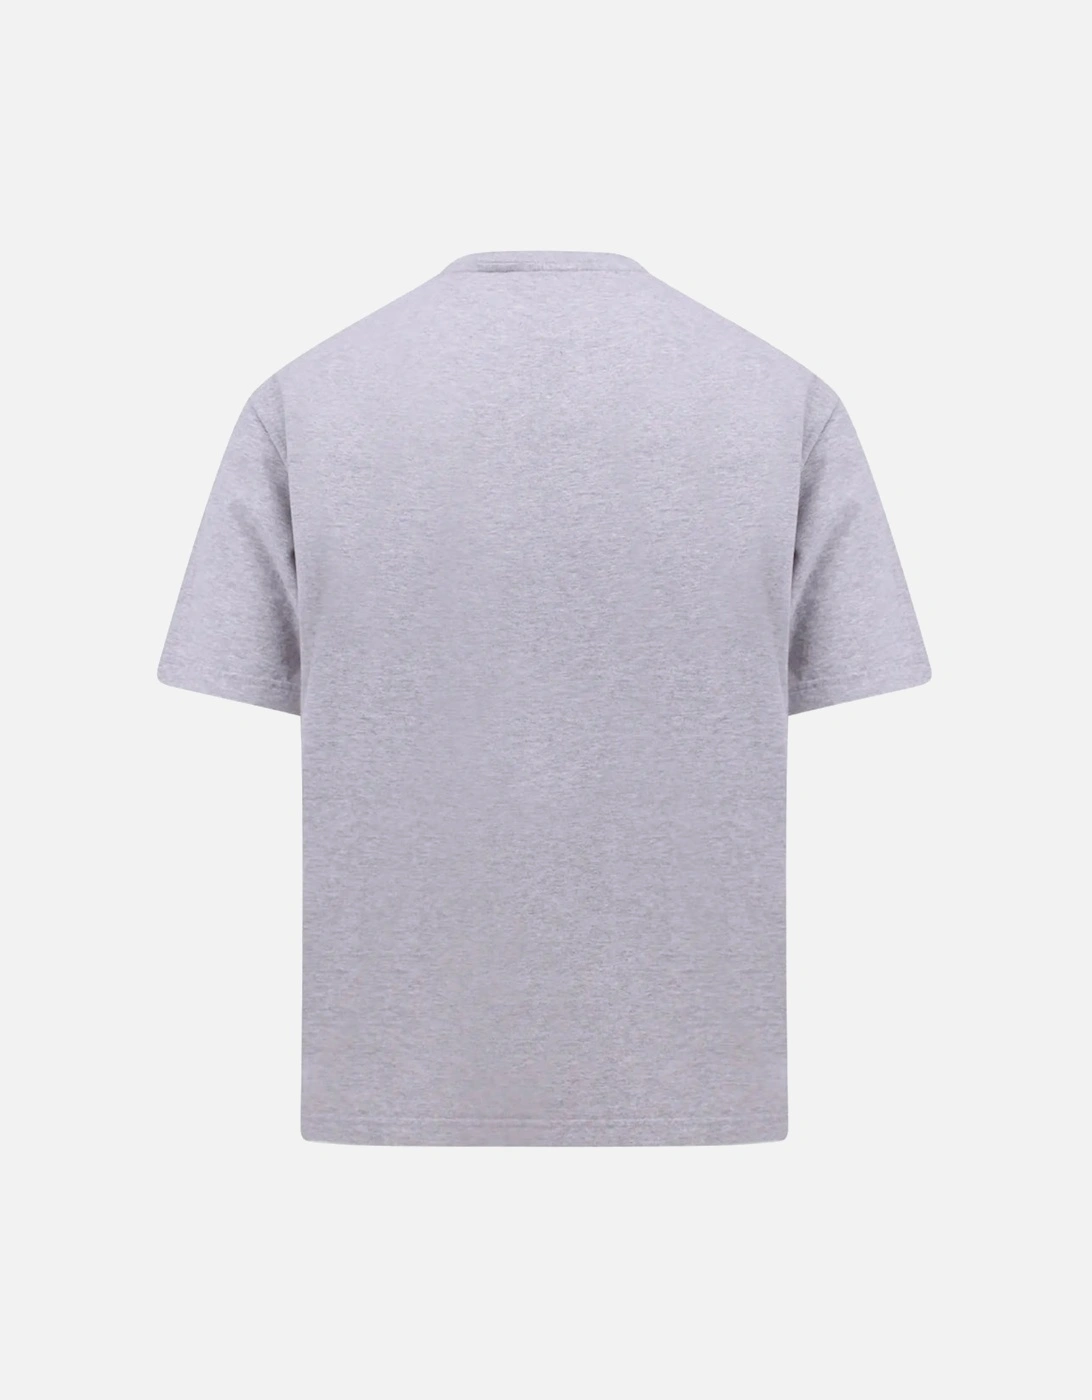 Plain Gothic Logo Slim Fit Grey T-Shirt